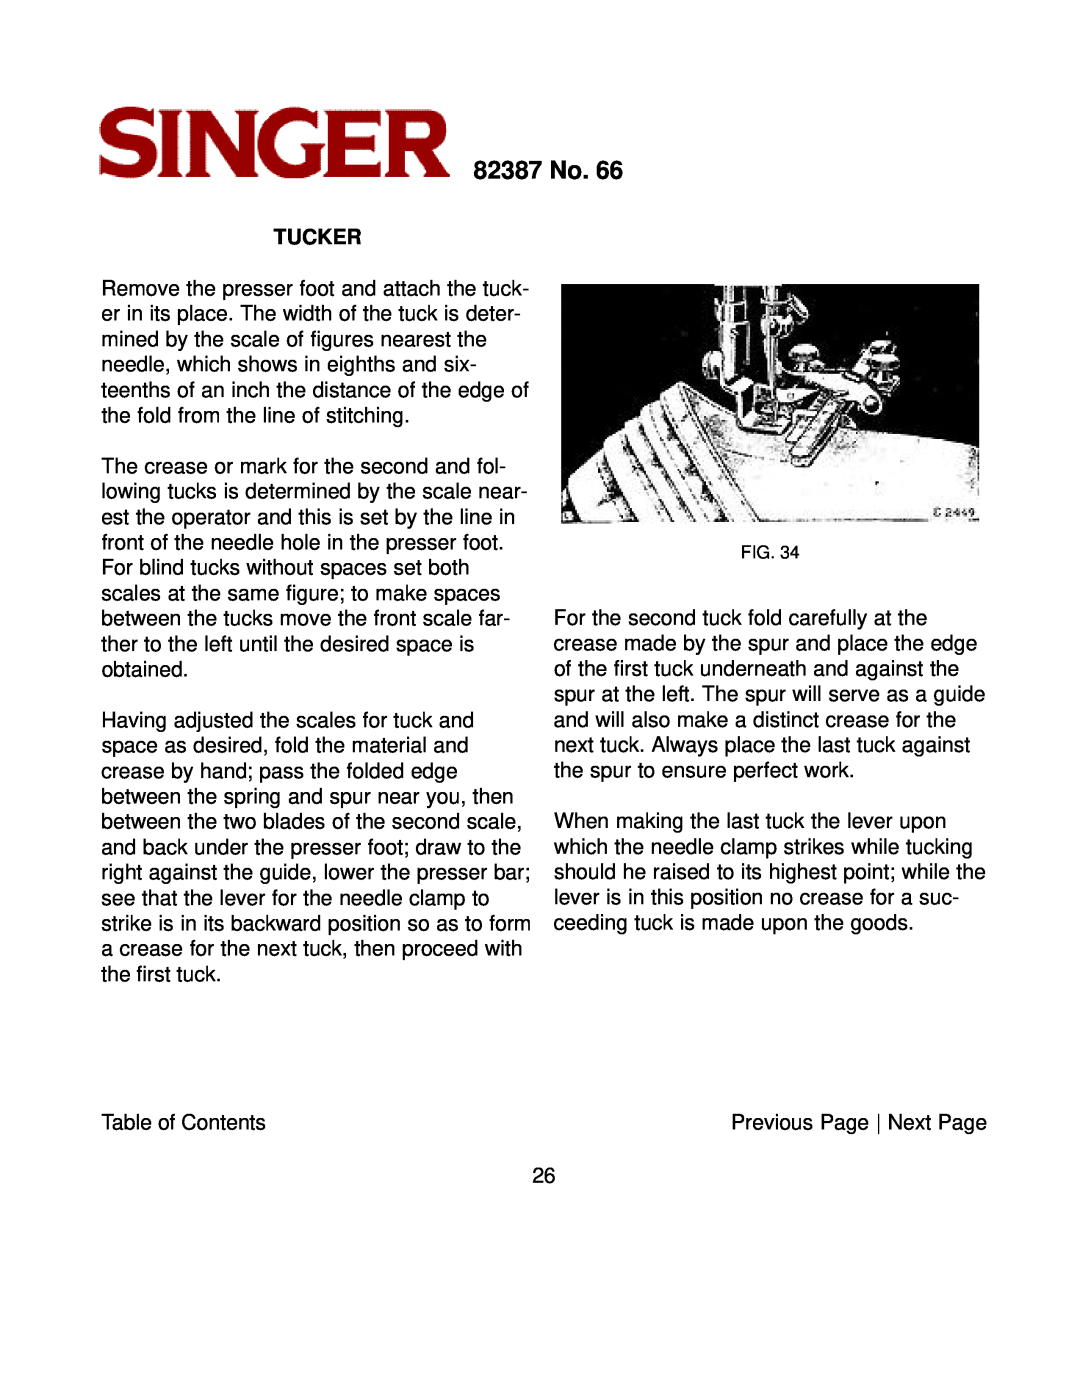 Singer instruction manual Tucker, 82387 No 